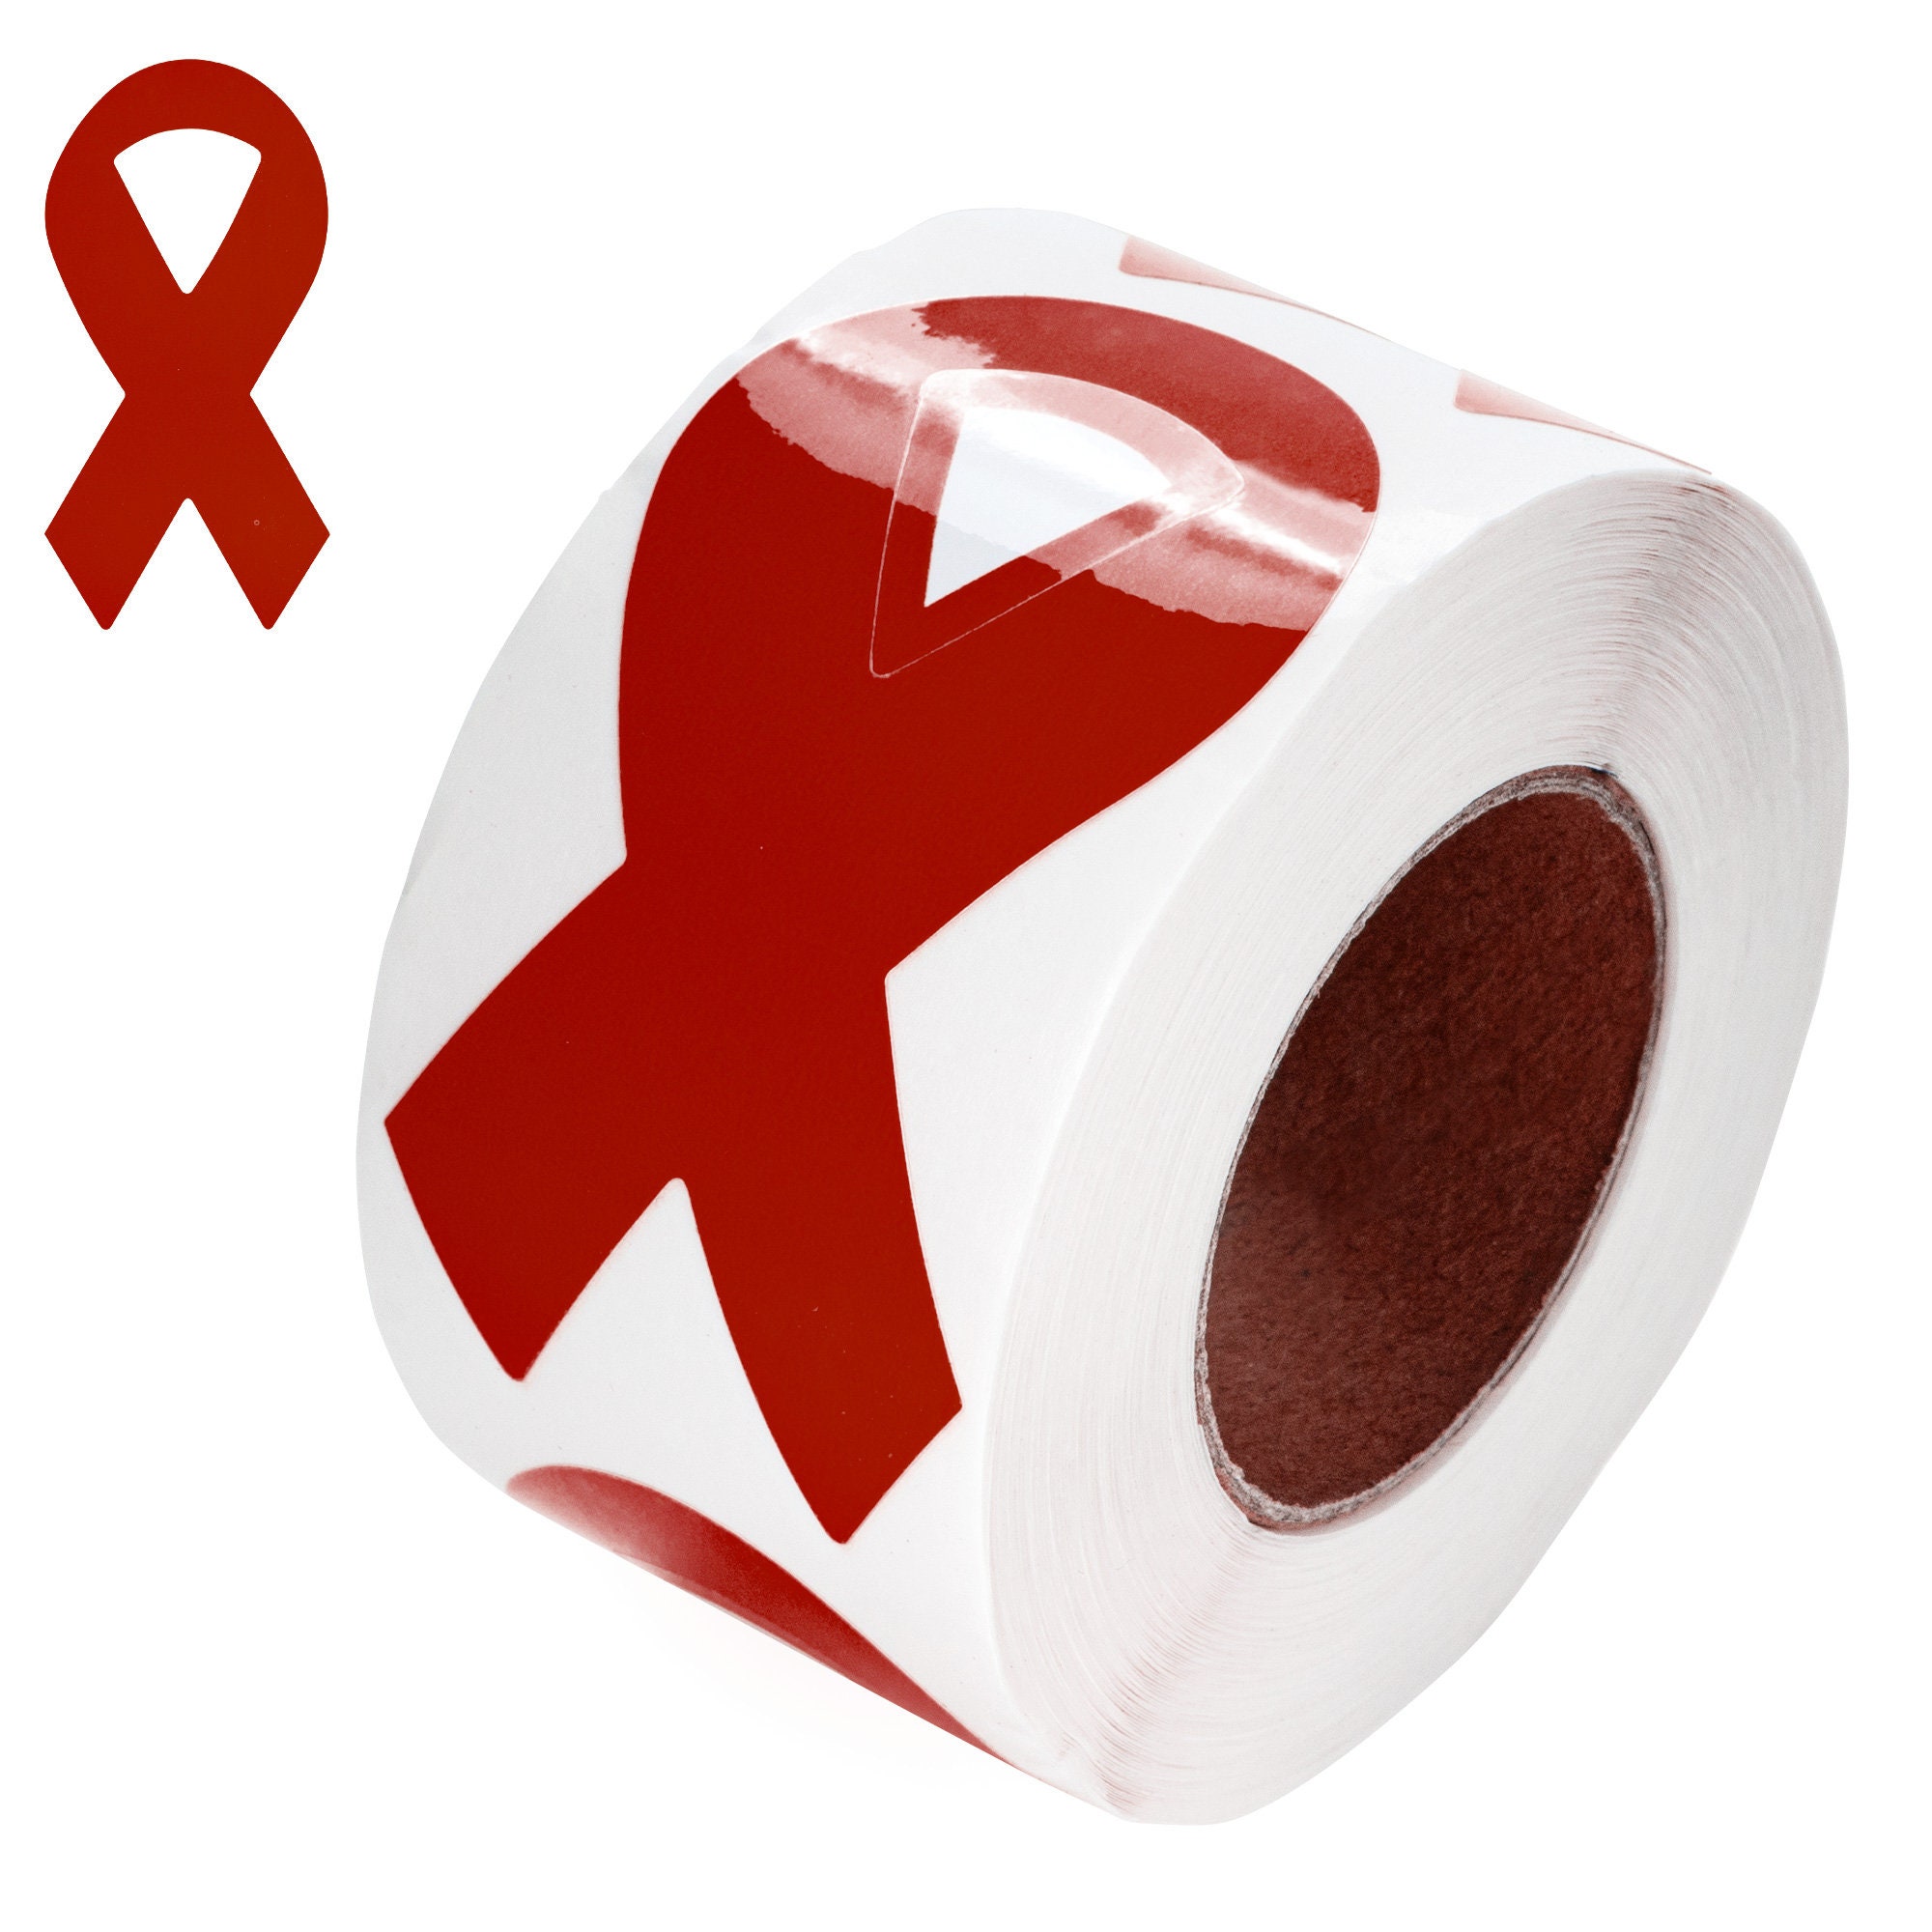 Burgundy Fabric Awareness Ribbons - 250 ribbons / bag